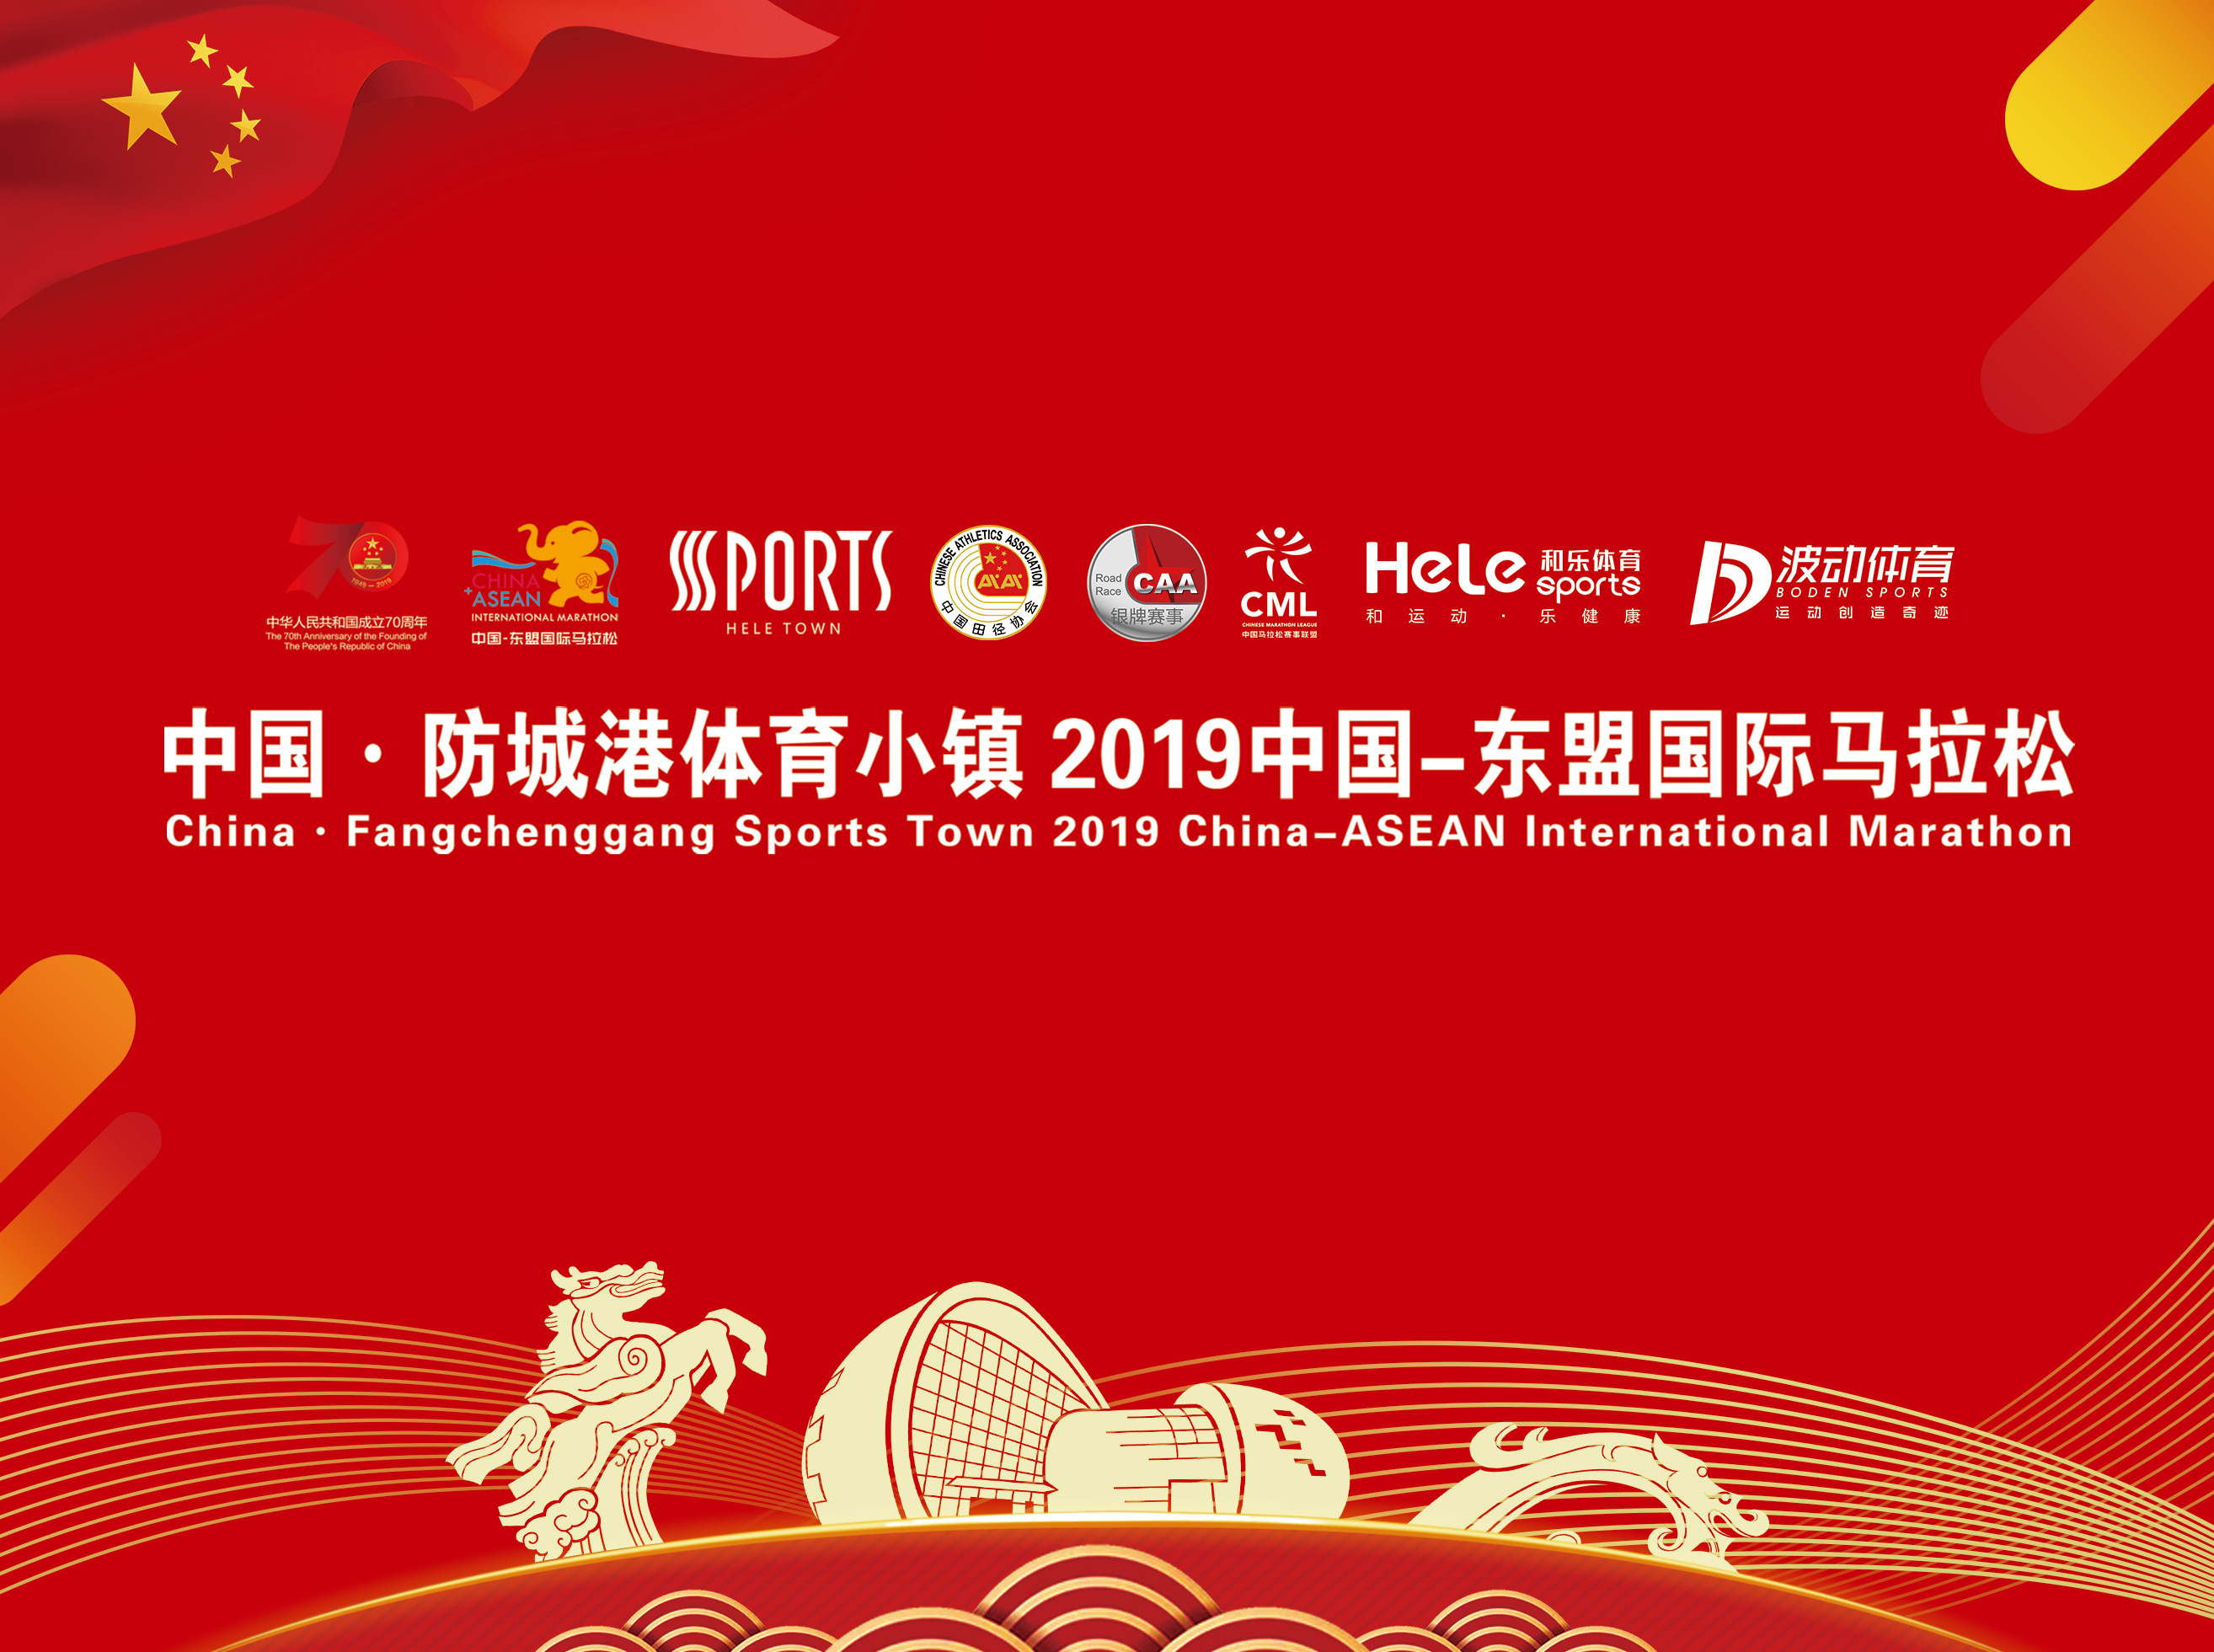 中国·防城港体育小镇2019中国-东盟国际马拉松